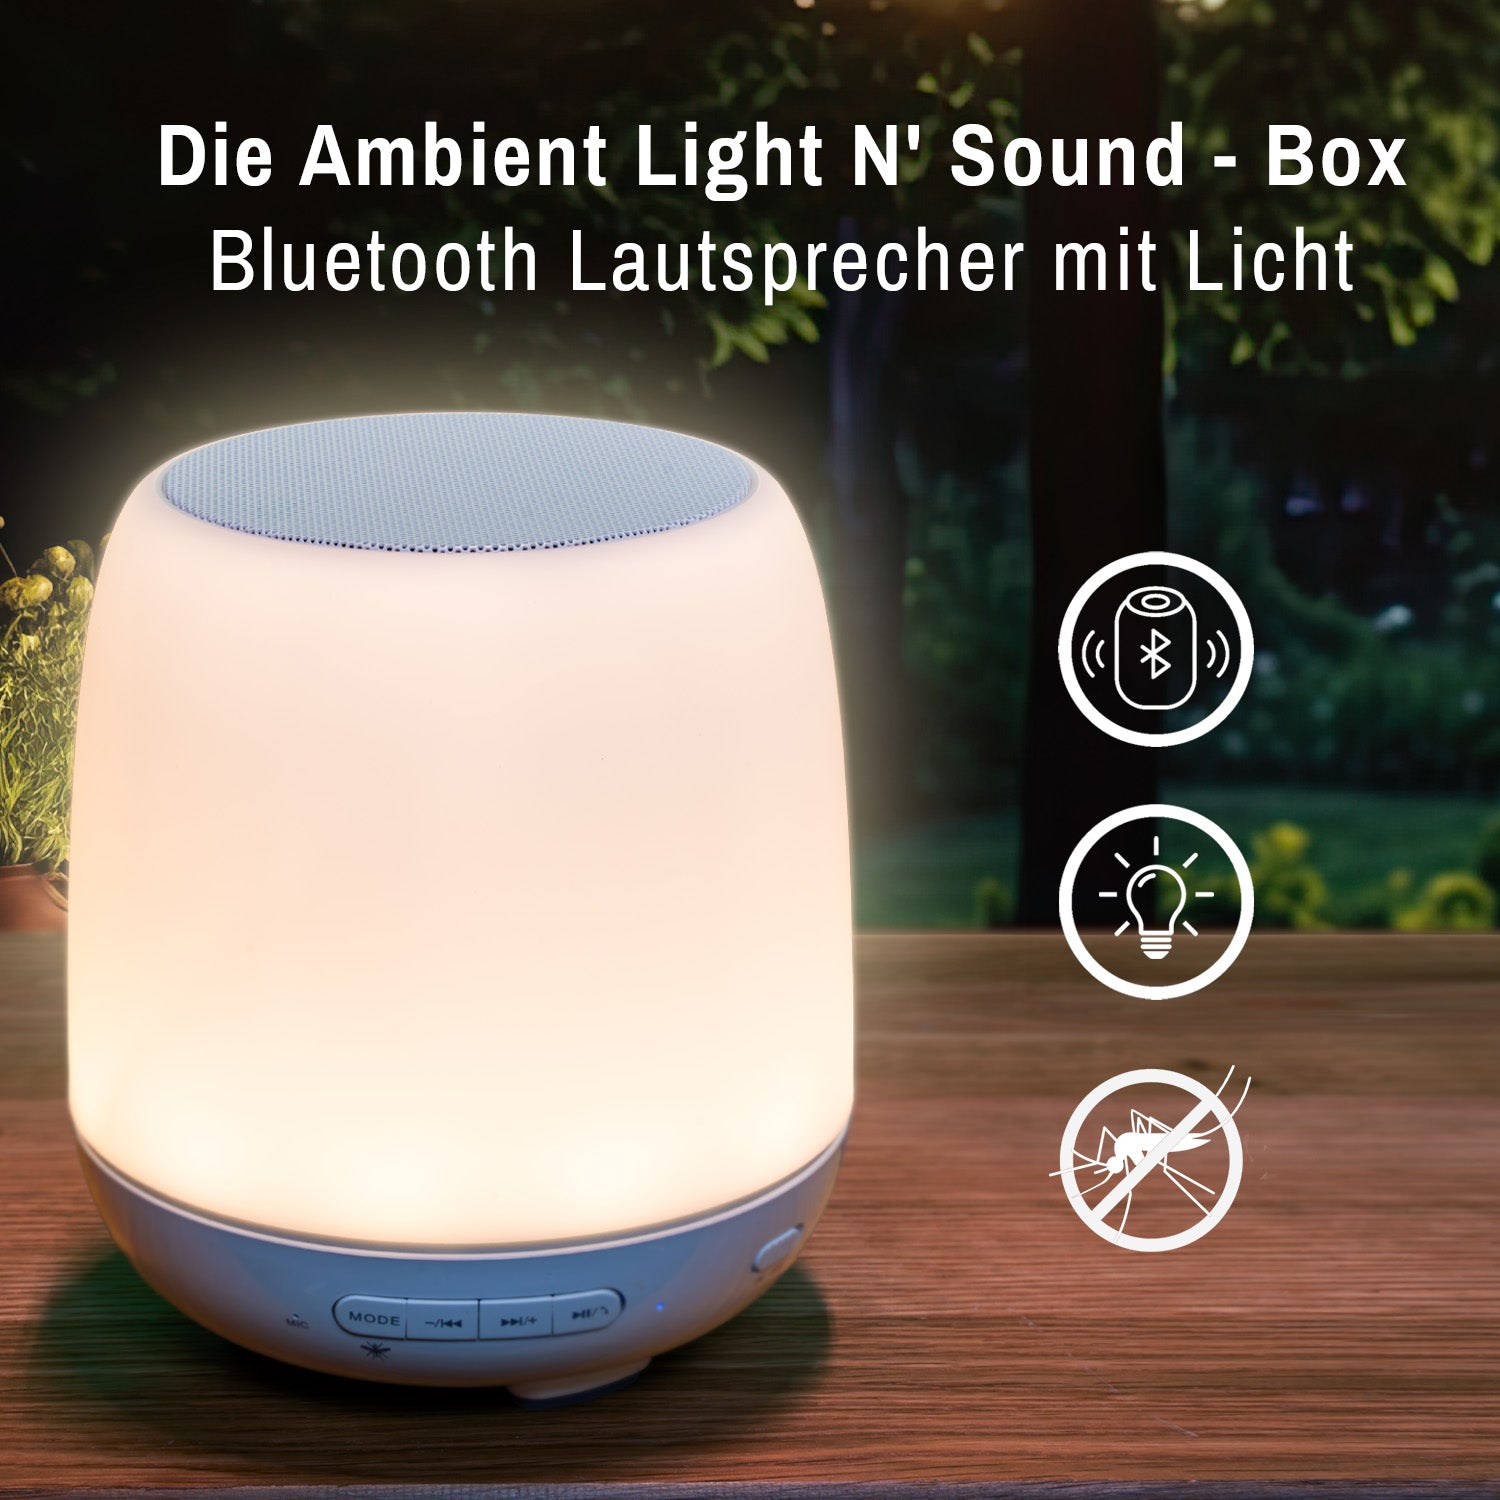 Bluetooth Lautsprecher mit Licht | BTL 692